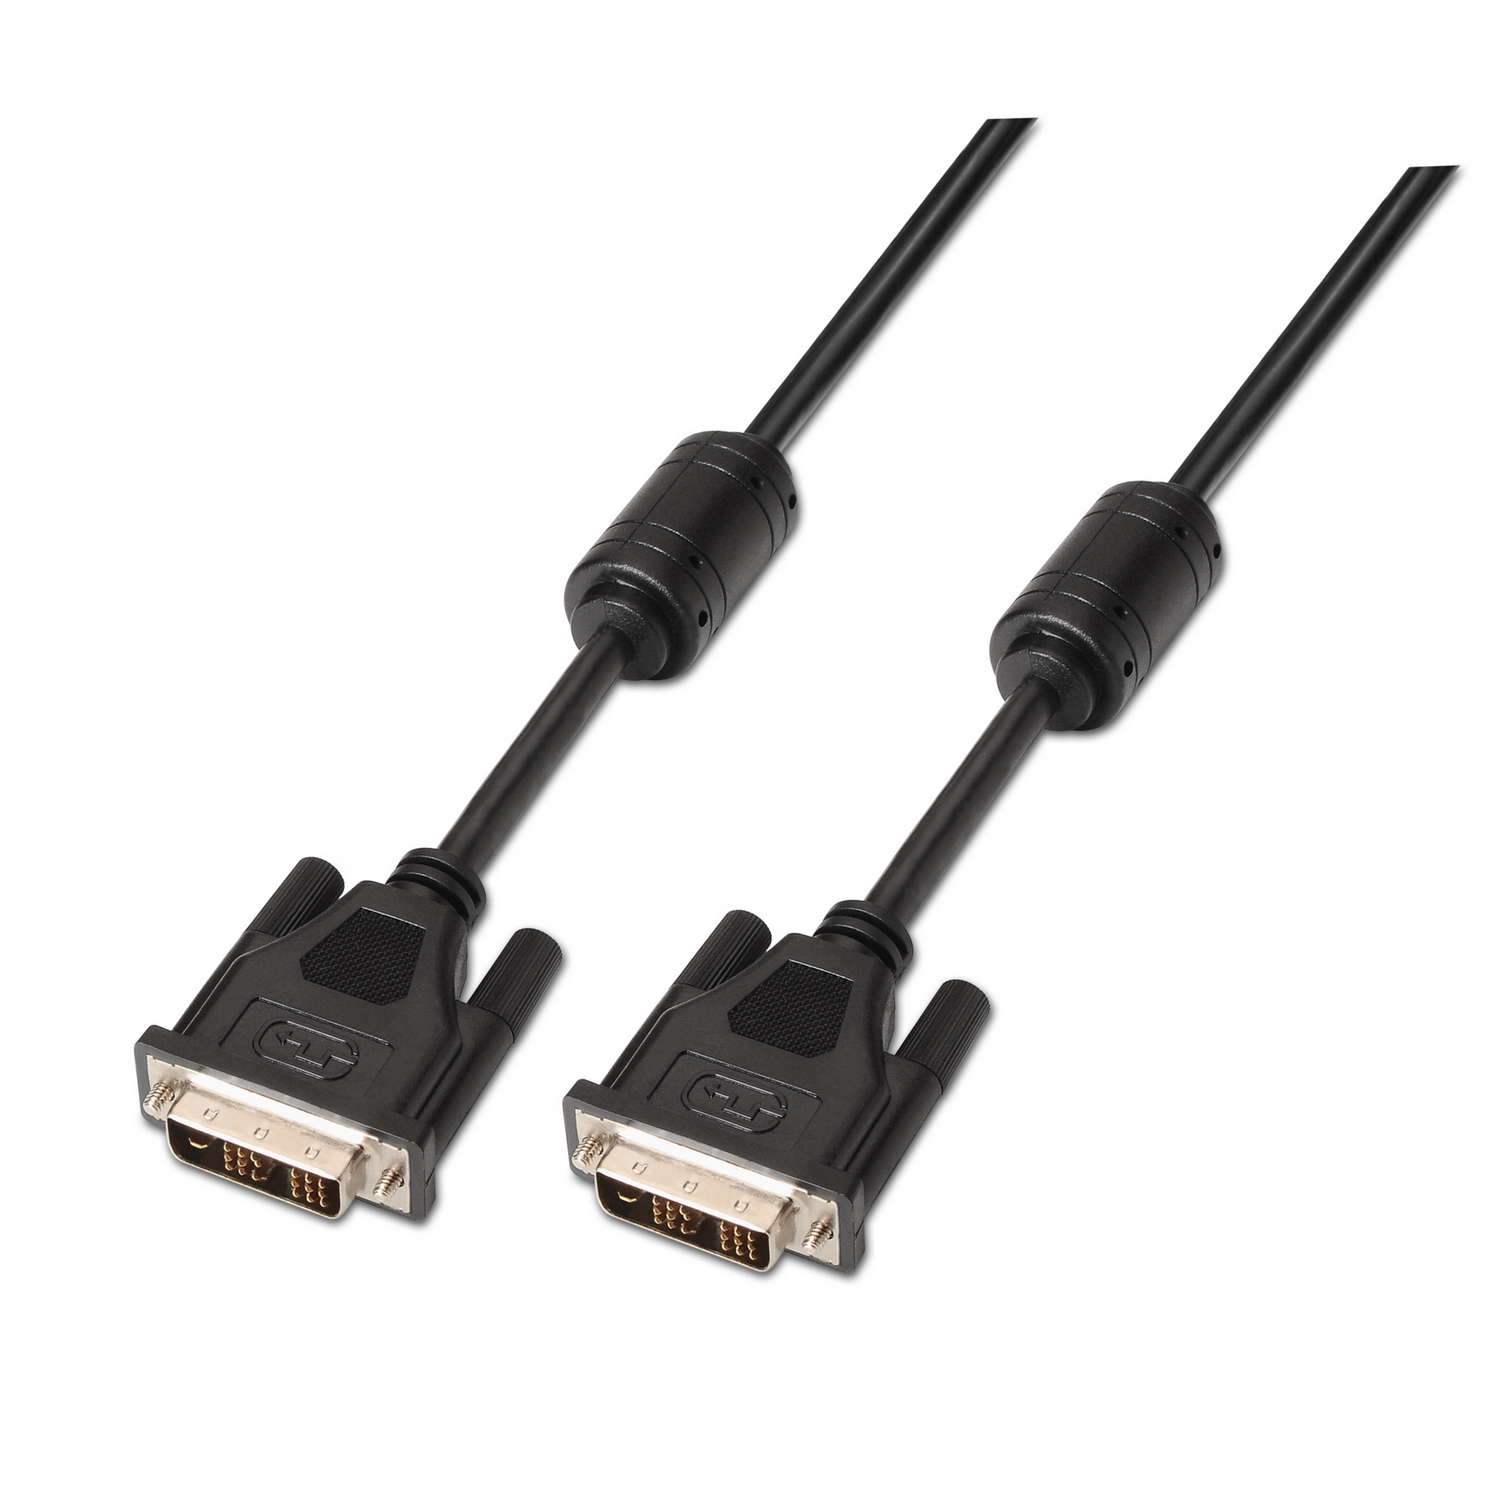 Adaptador DVI-D Dual Link 24+1 hembra a HDMI macho – Cables y